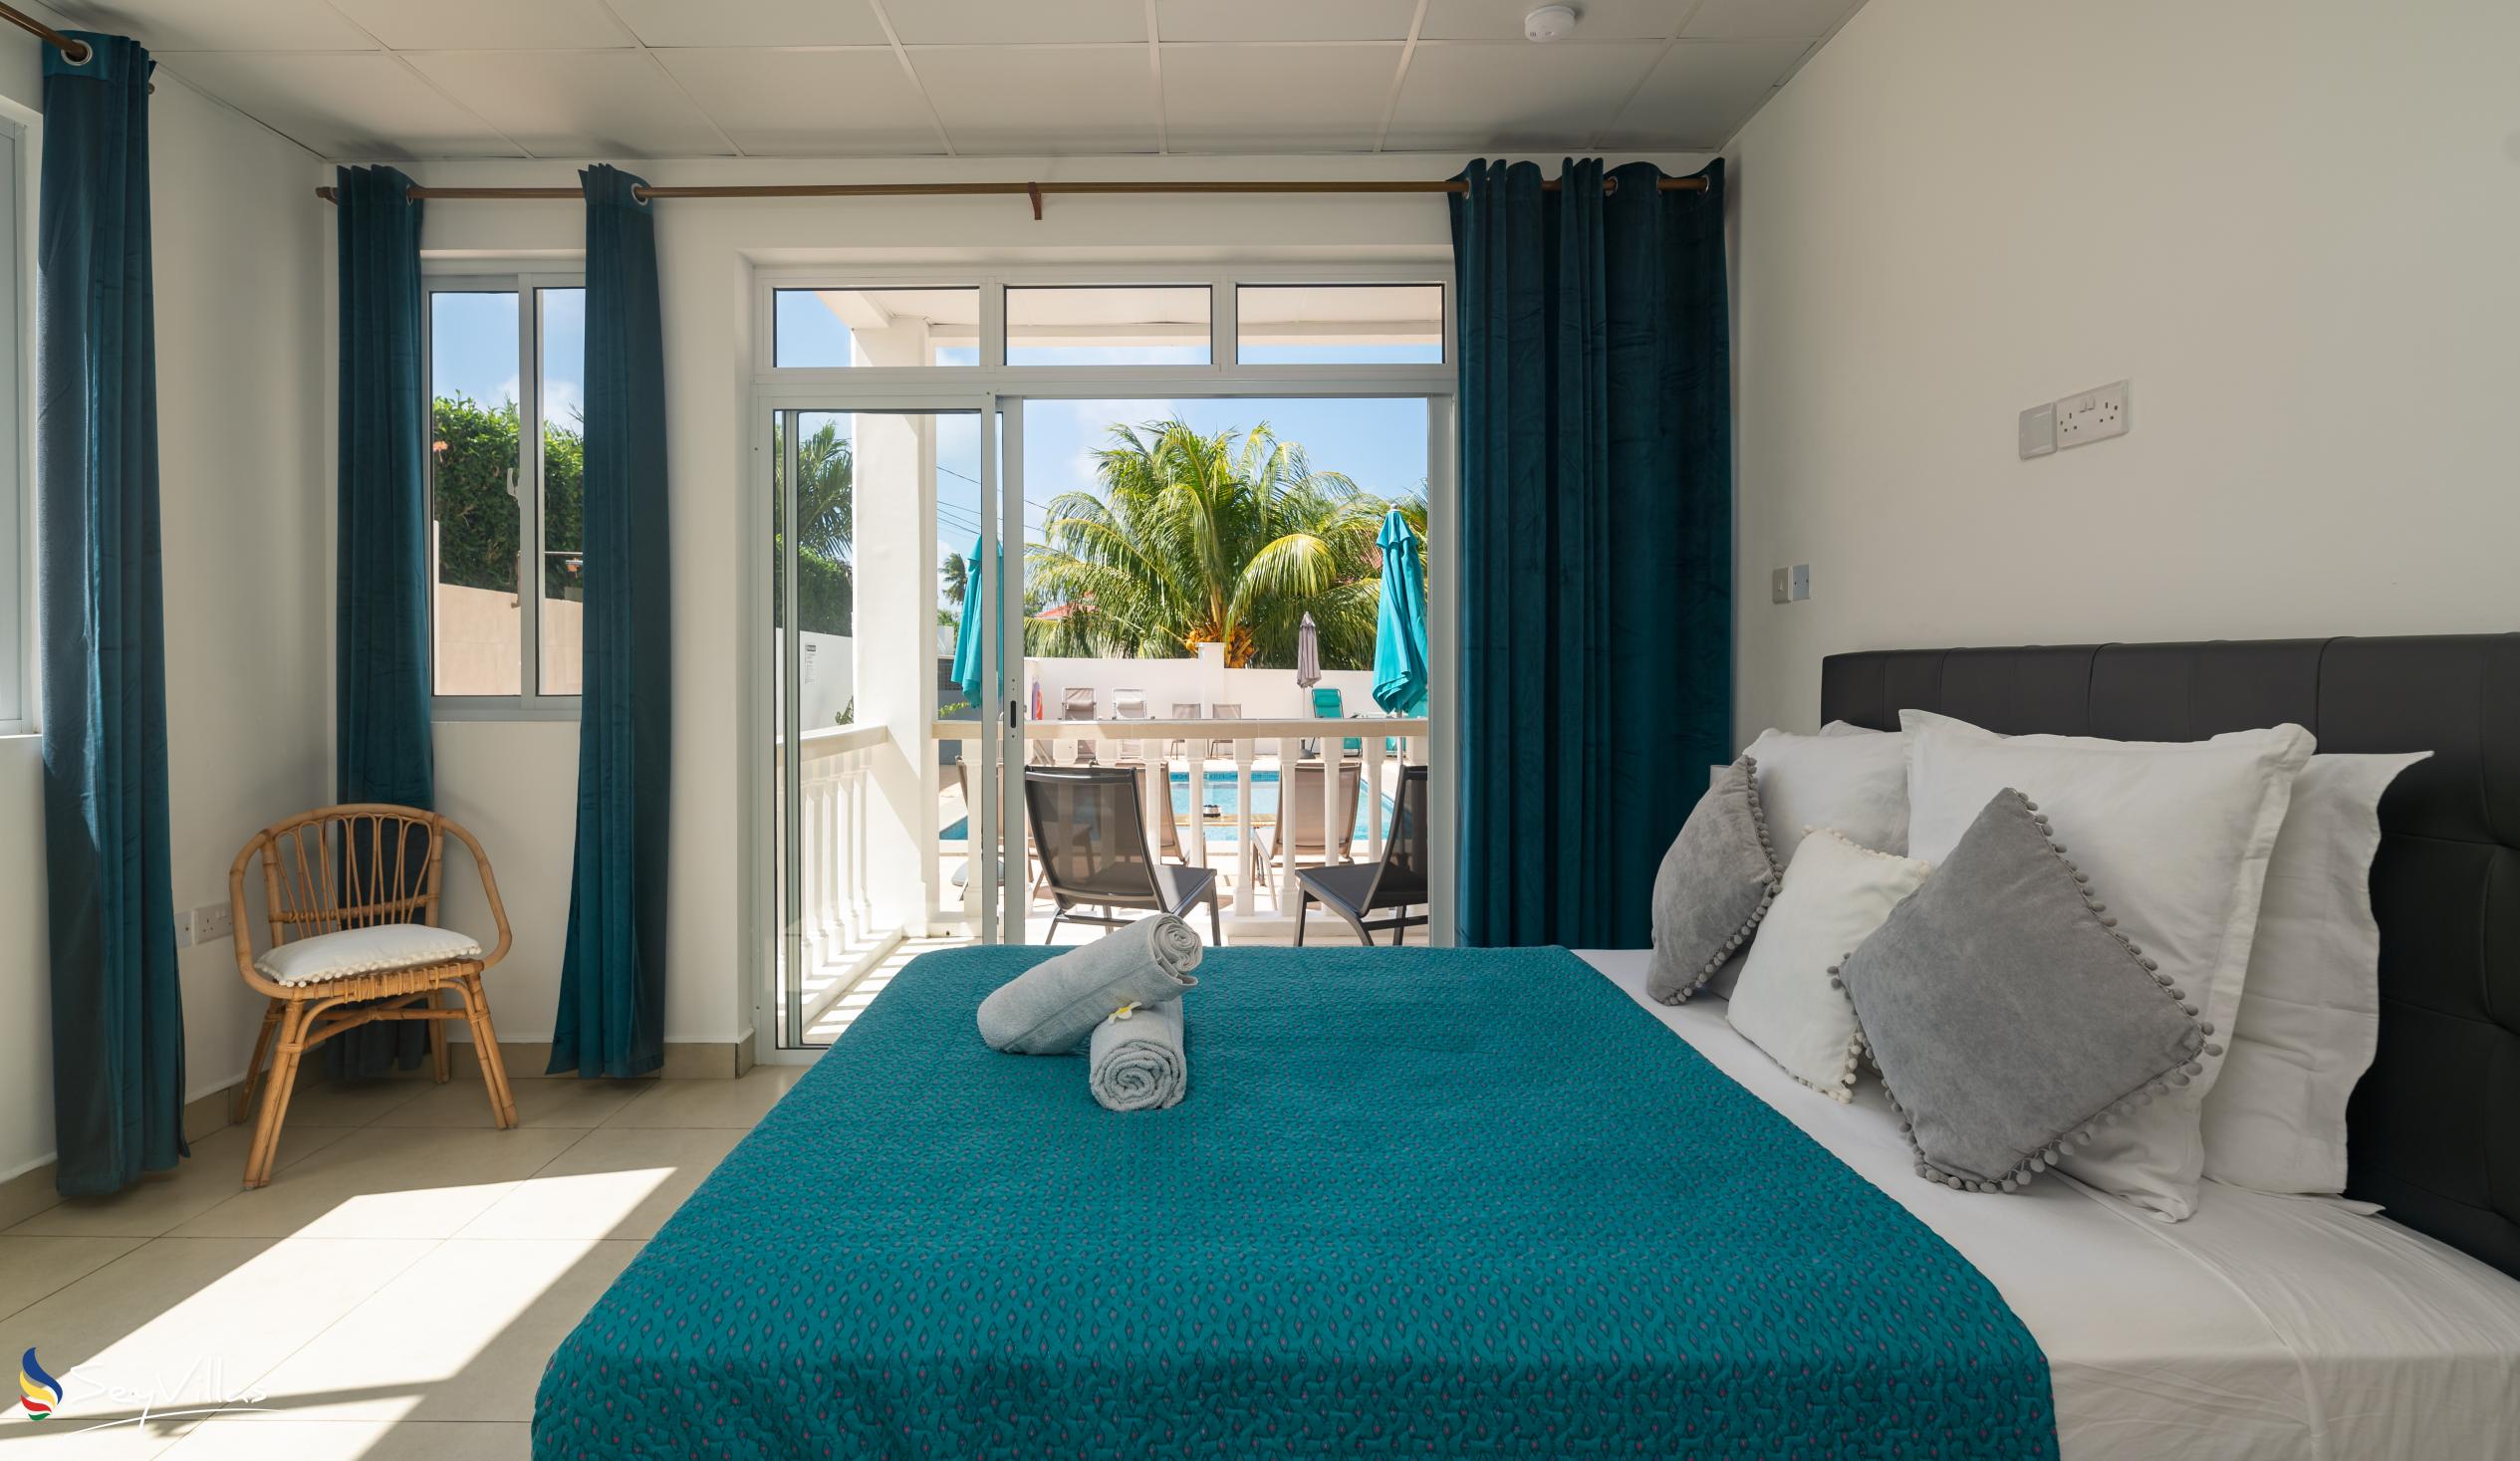 Photo 63: Cap Confort - 1-Bedroom Apartment - Mahé (Seychelles)